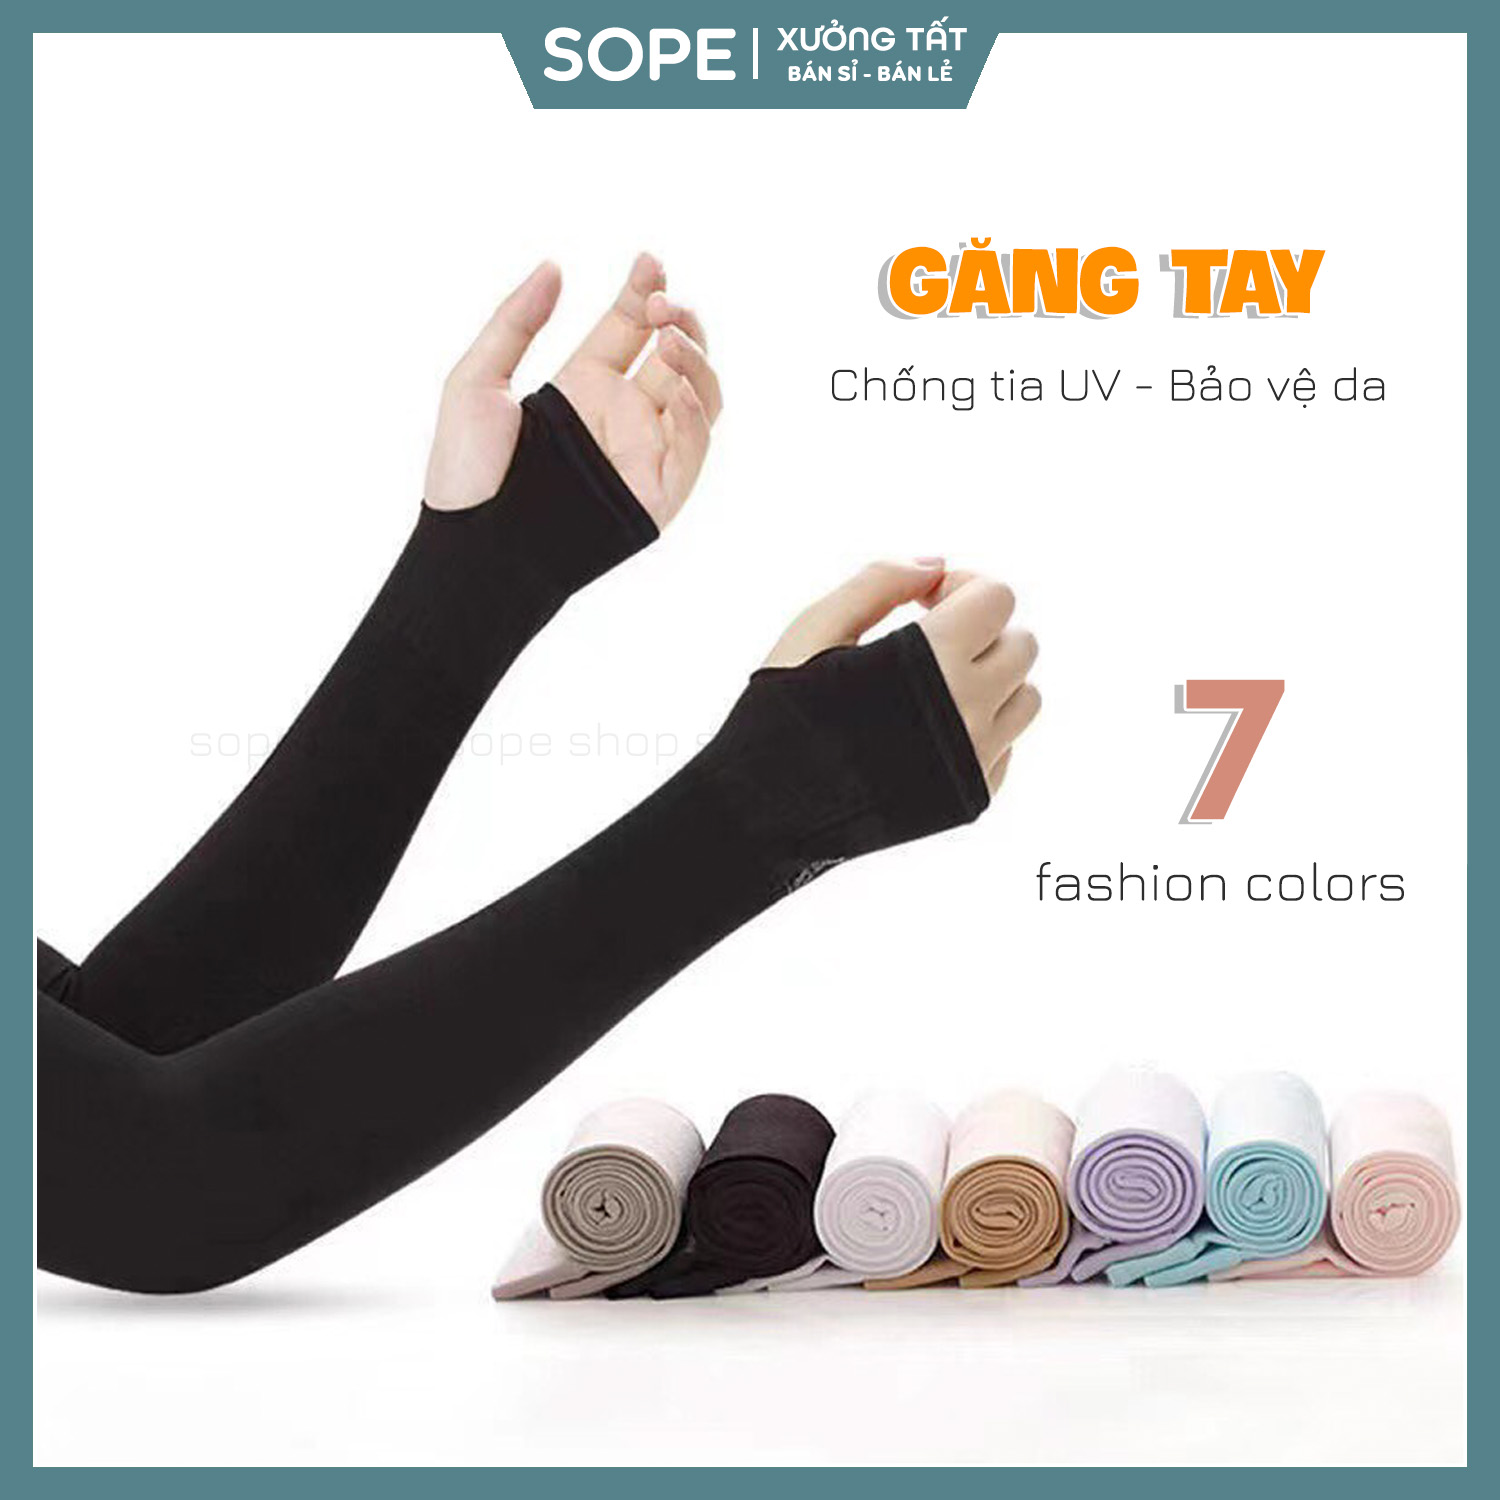 Gang tay chống nắng nam nữ chất liệu vải Hàn mát lạnh, chống tia UV cực tốt – Zala Shop